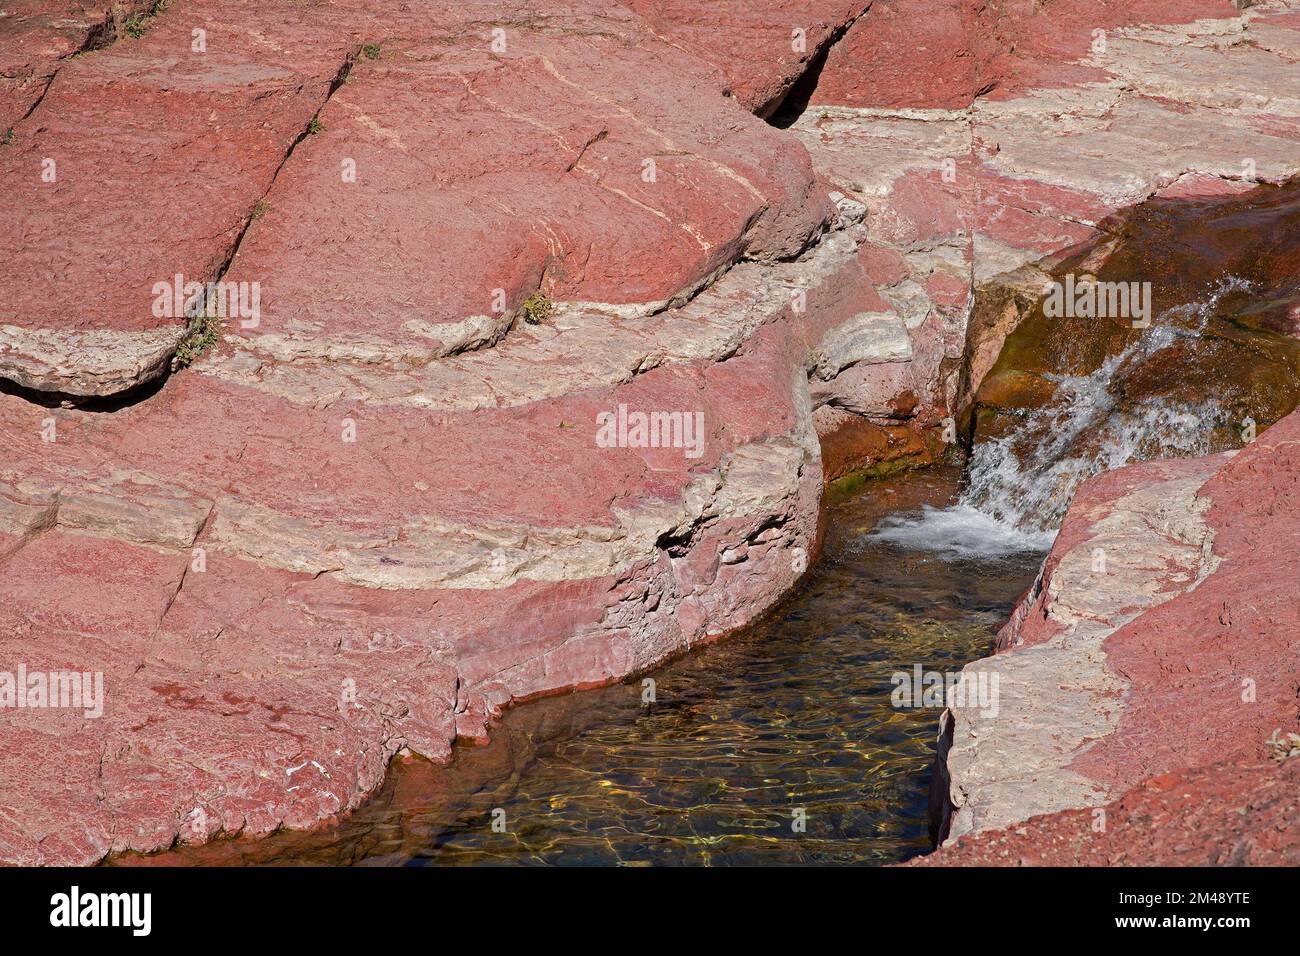 Antica roccia argillitica colorata di rosso da ferro ossidato lungo Bauerman Creek nel Red Rock Canyon, Waterton Lakes National Park, Canada Foto Stock